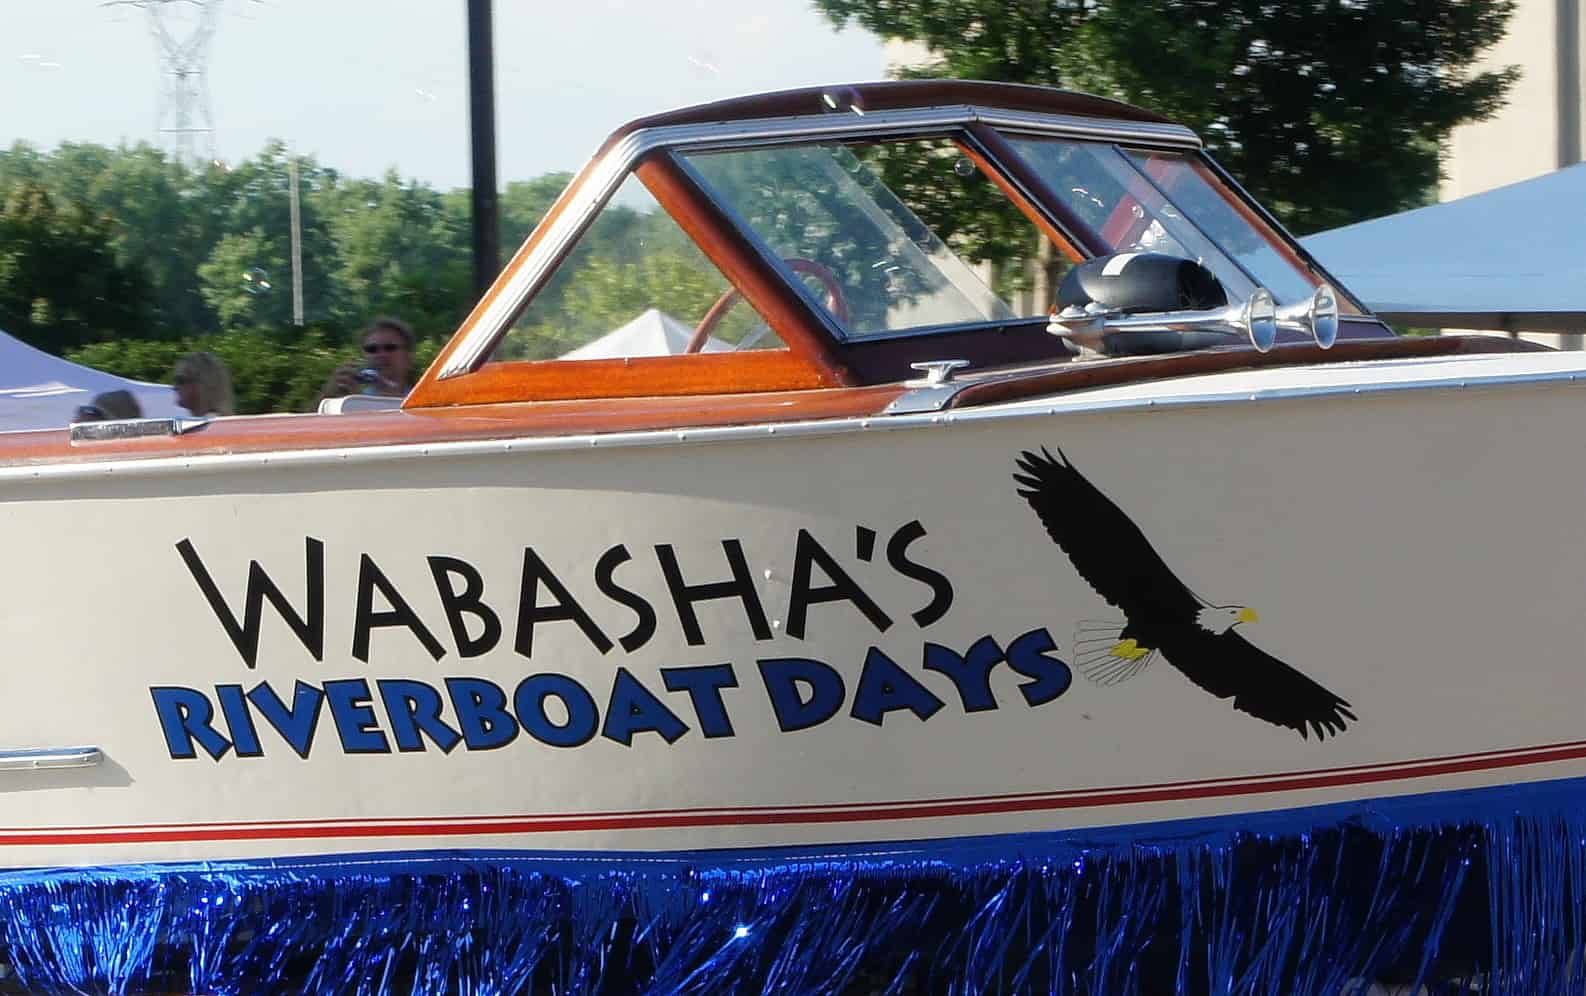 Wabasha Riverboat Days